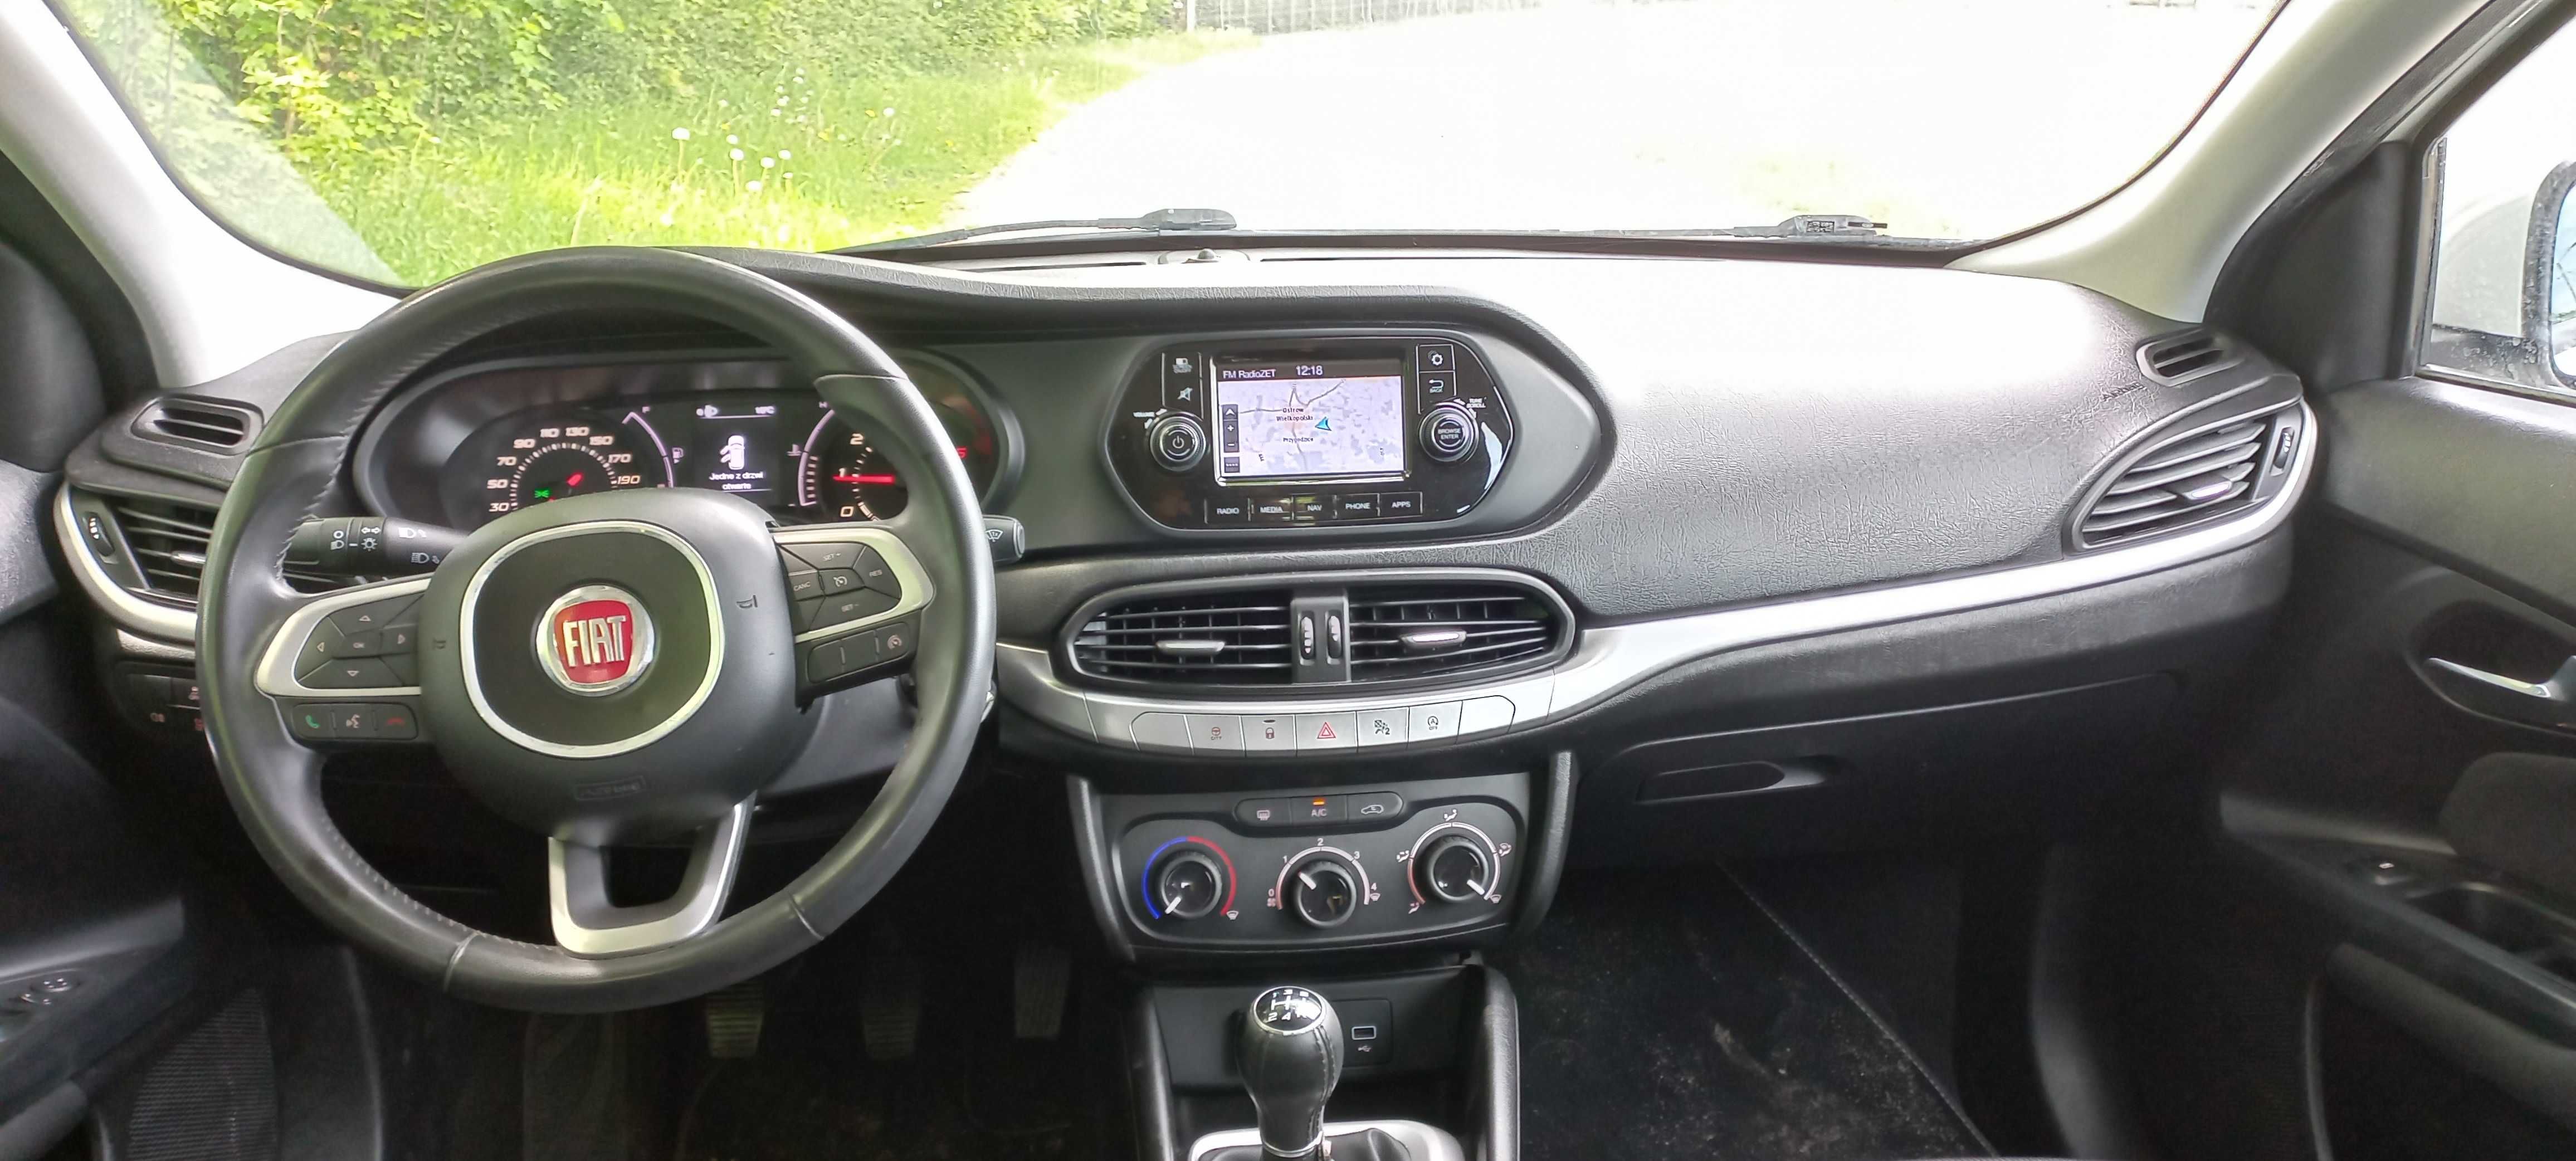 Fiat Tipo hb diesel 2018 nawigacja czujniki parkowania klimatyzacja